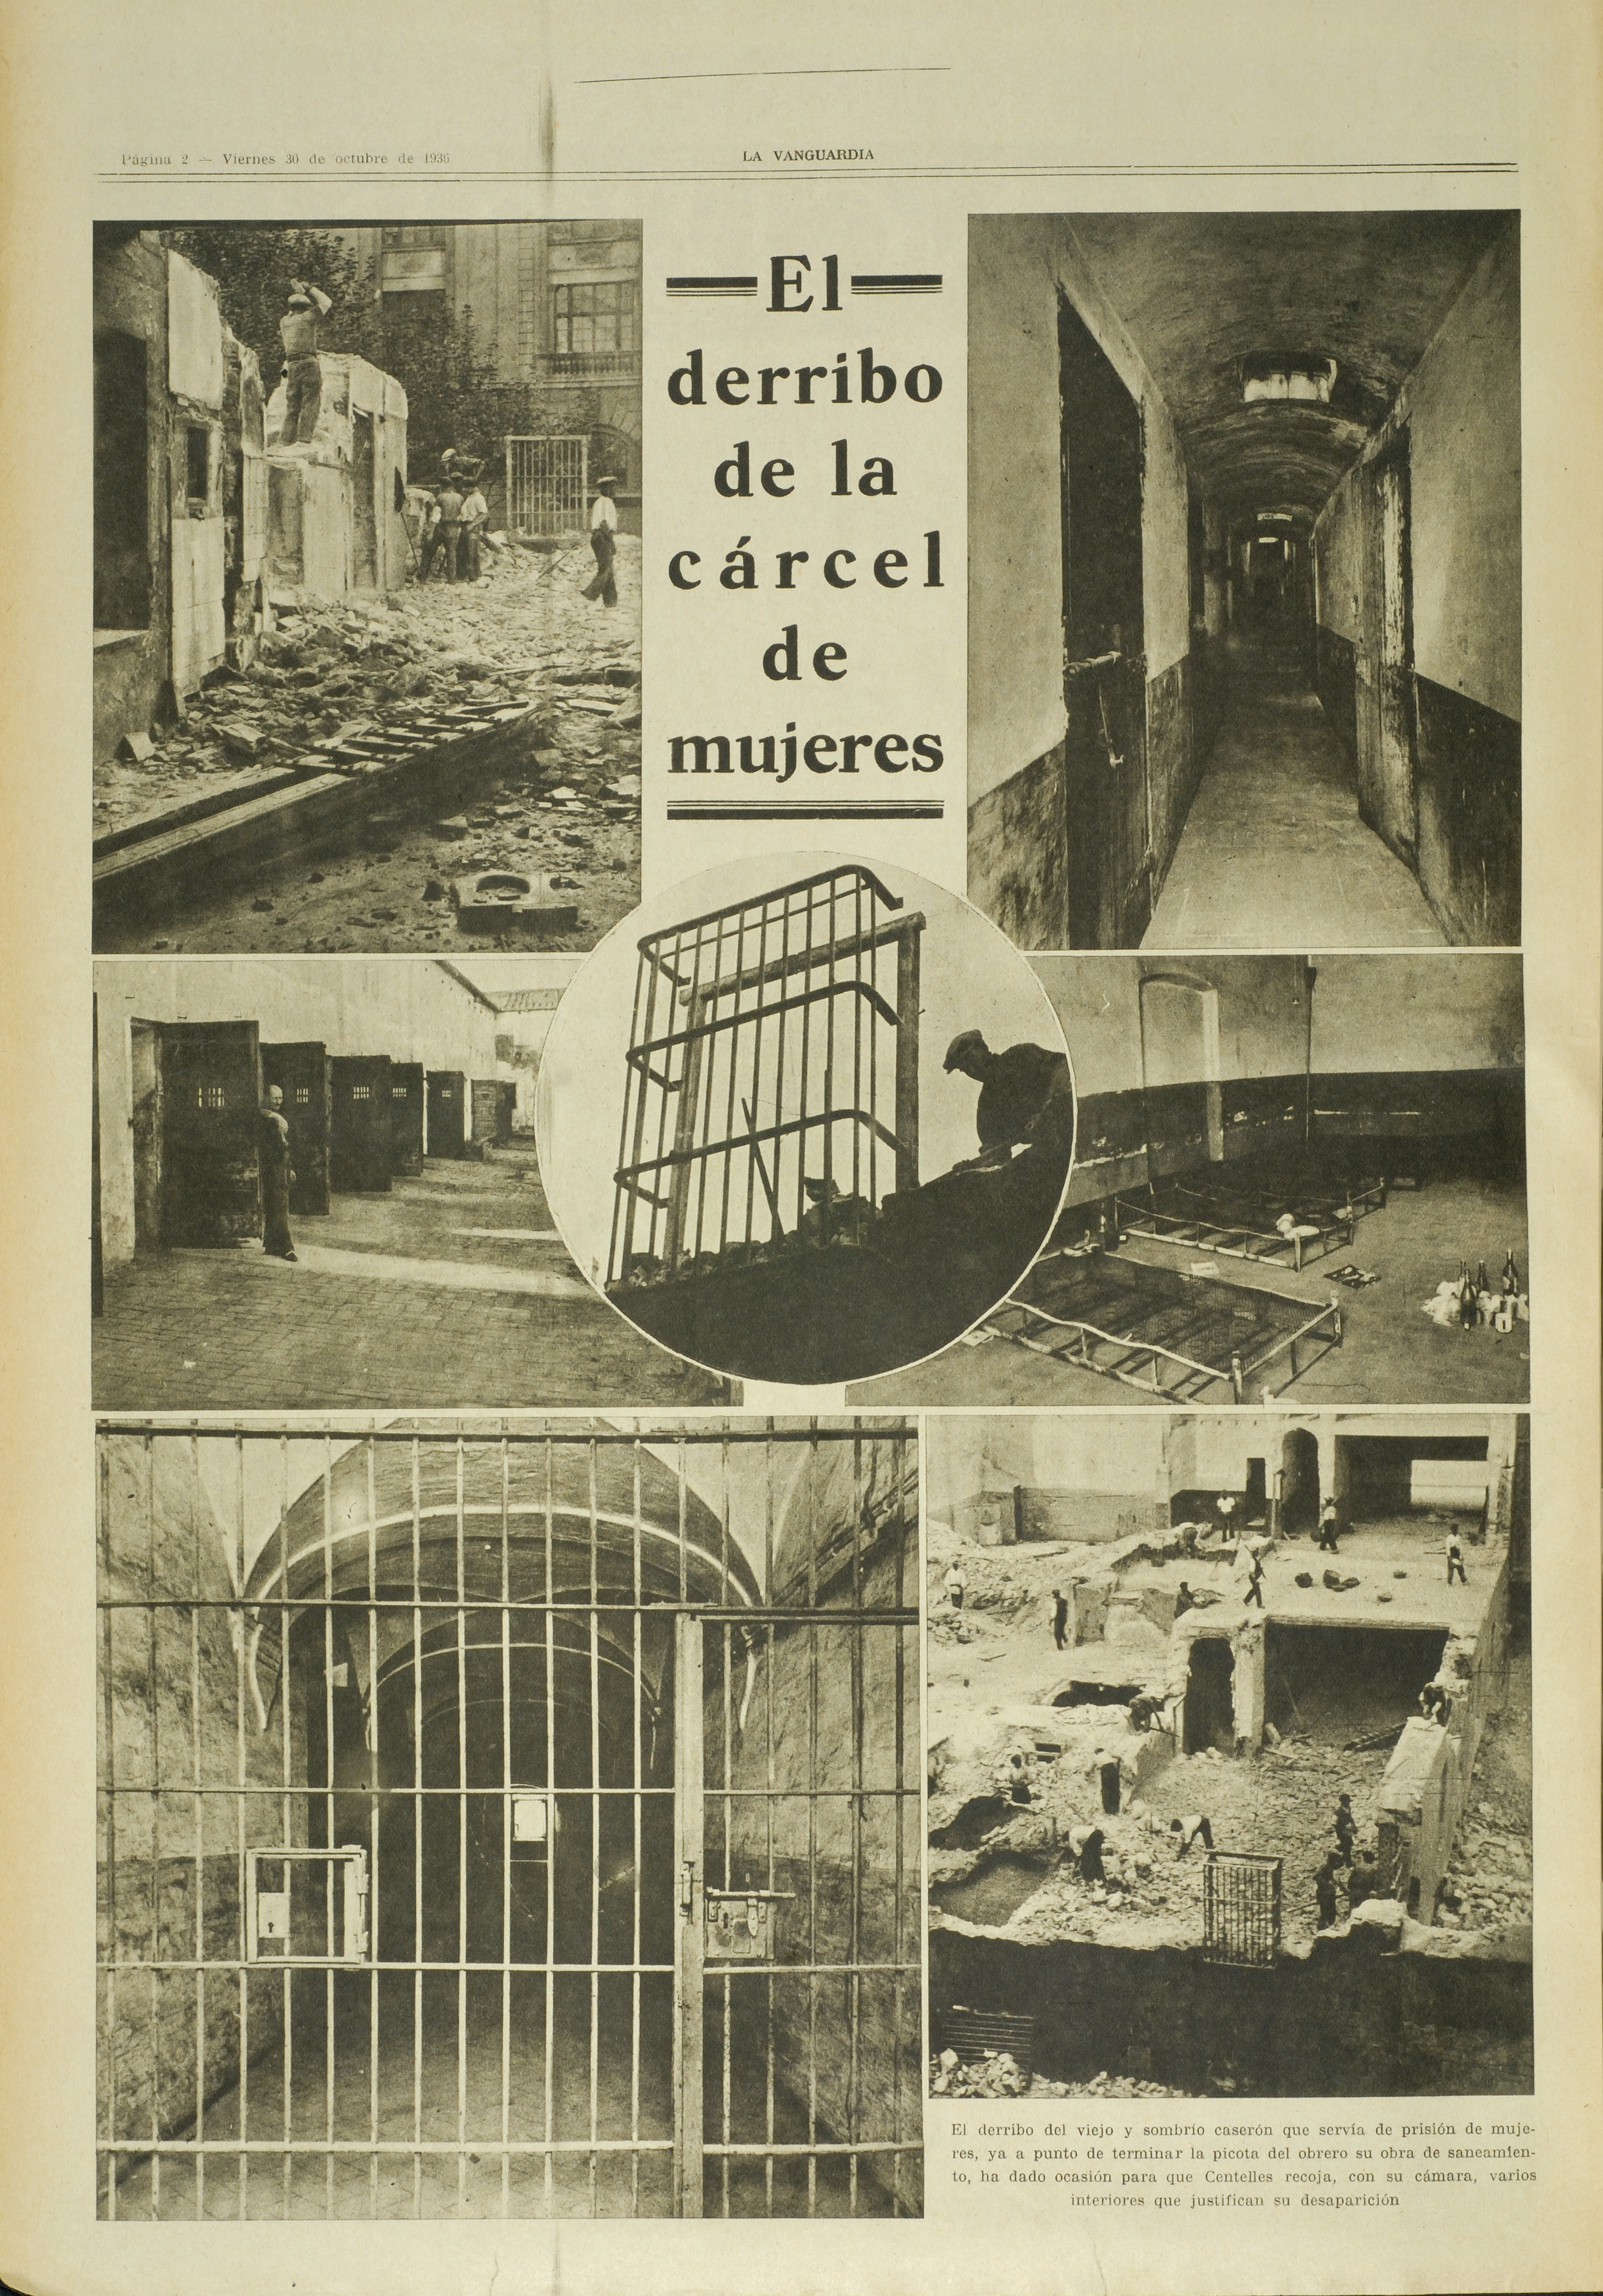 La Vanguardia,30-10-1936